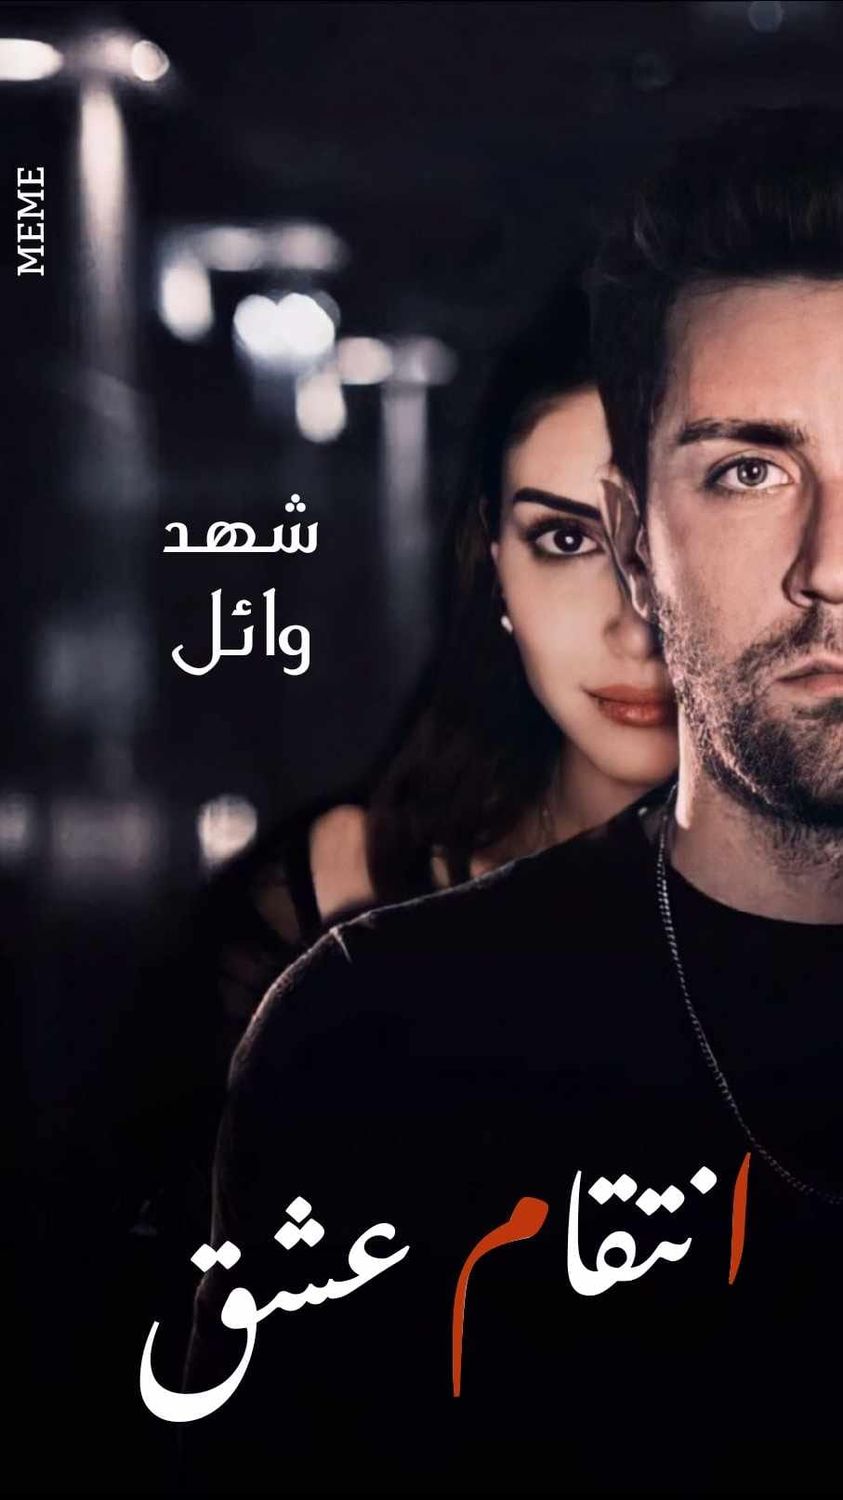 رواية انتقام عشق الفصل الثالث 3 بقلم شهد وائل – مدونة كامو